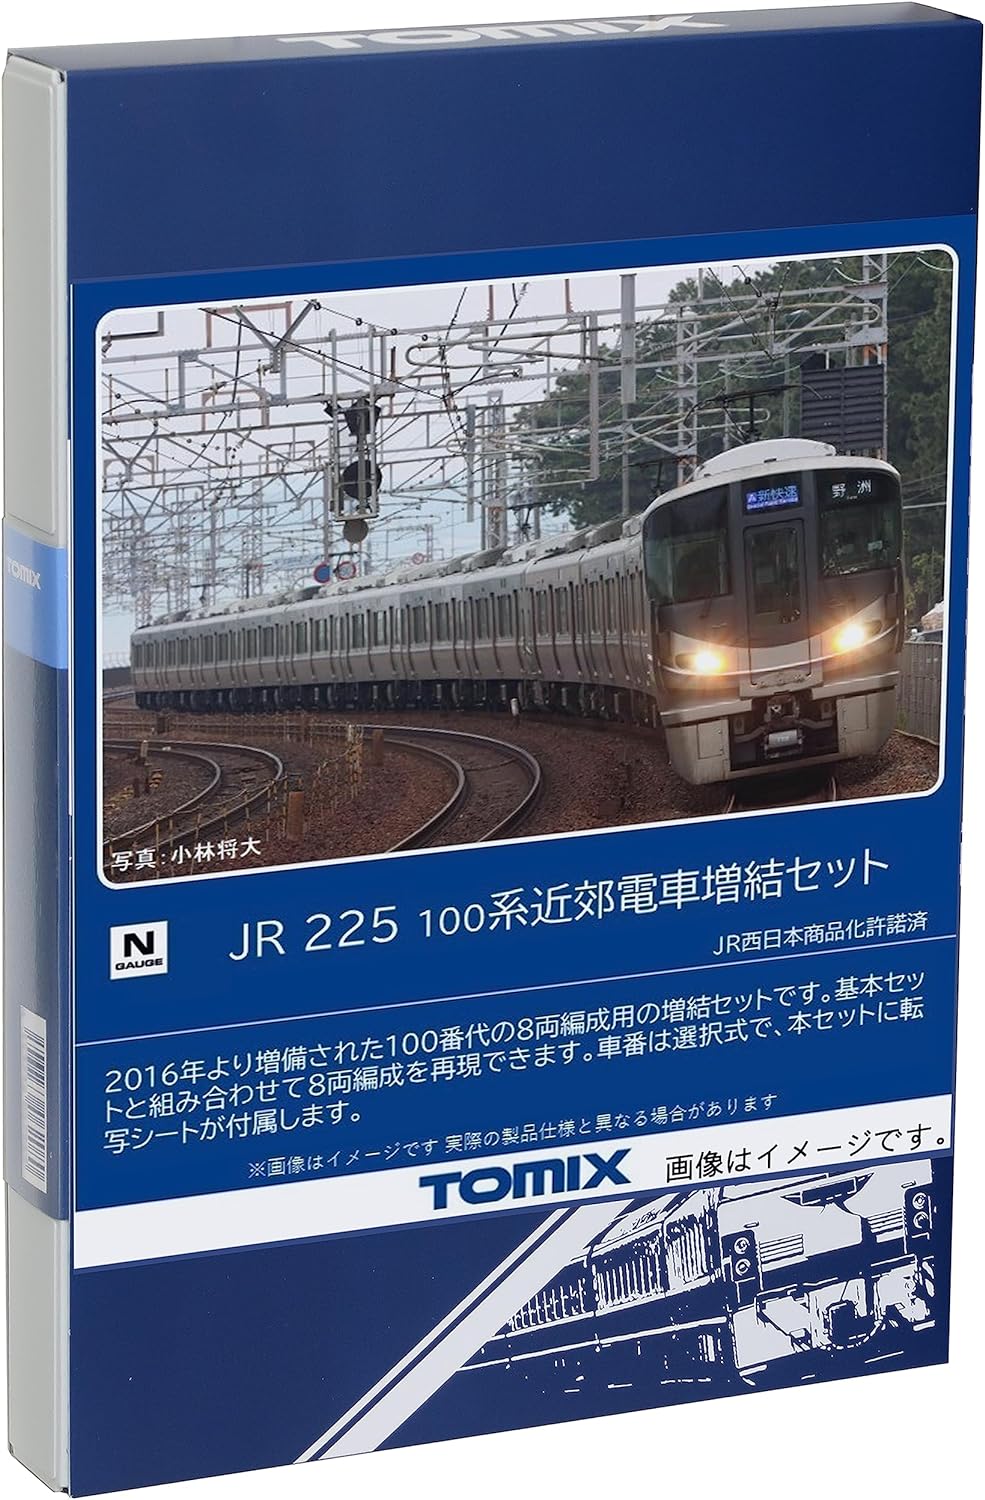 TOMIX 98546 N Gauge JR 225 100 Series Extension Set Railway Model Train